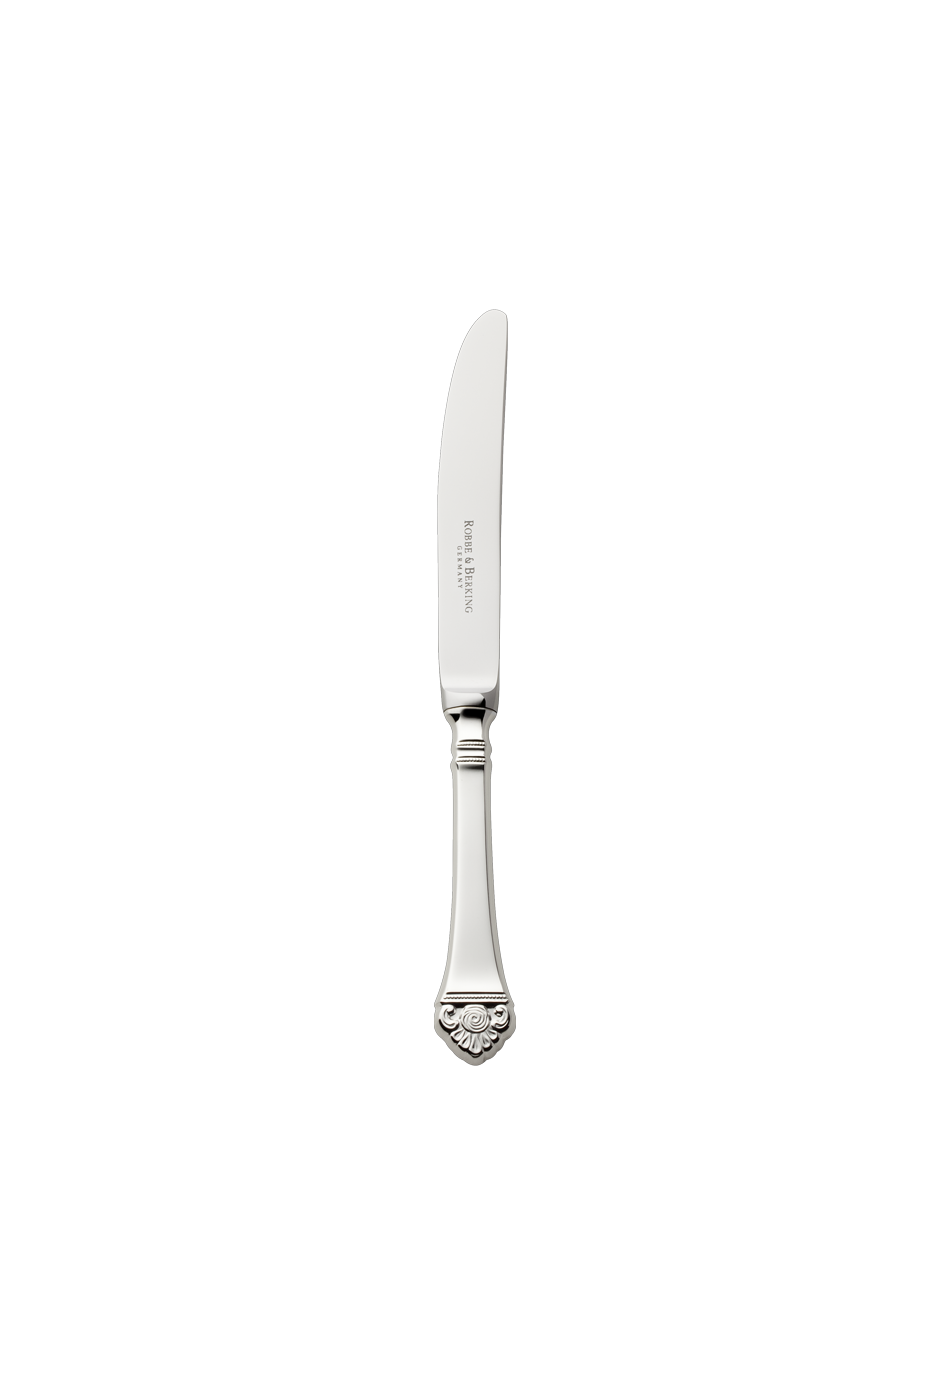 Rosenmuster Cake Knife / Fruit Knife (150g massive silverplated)